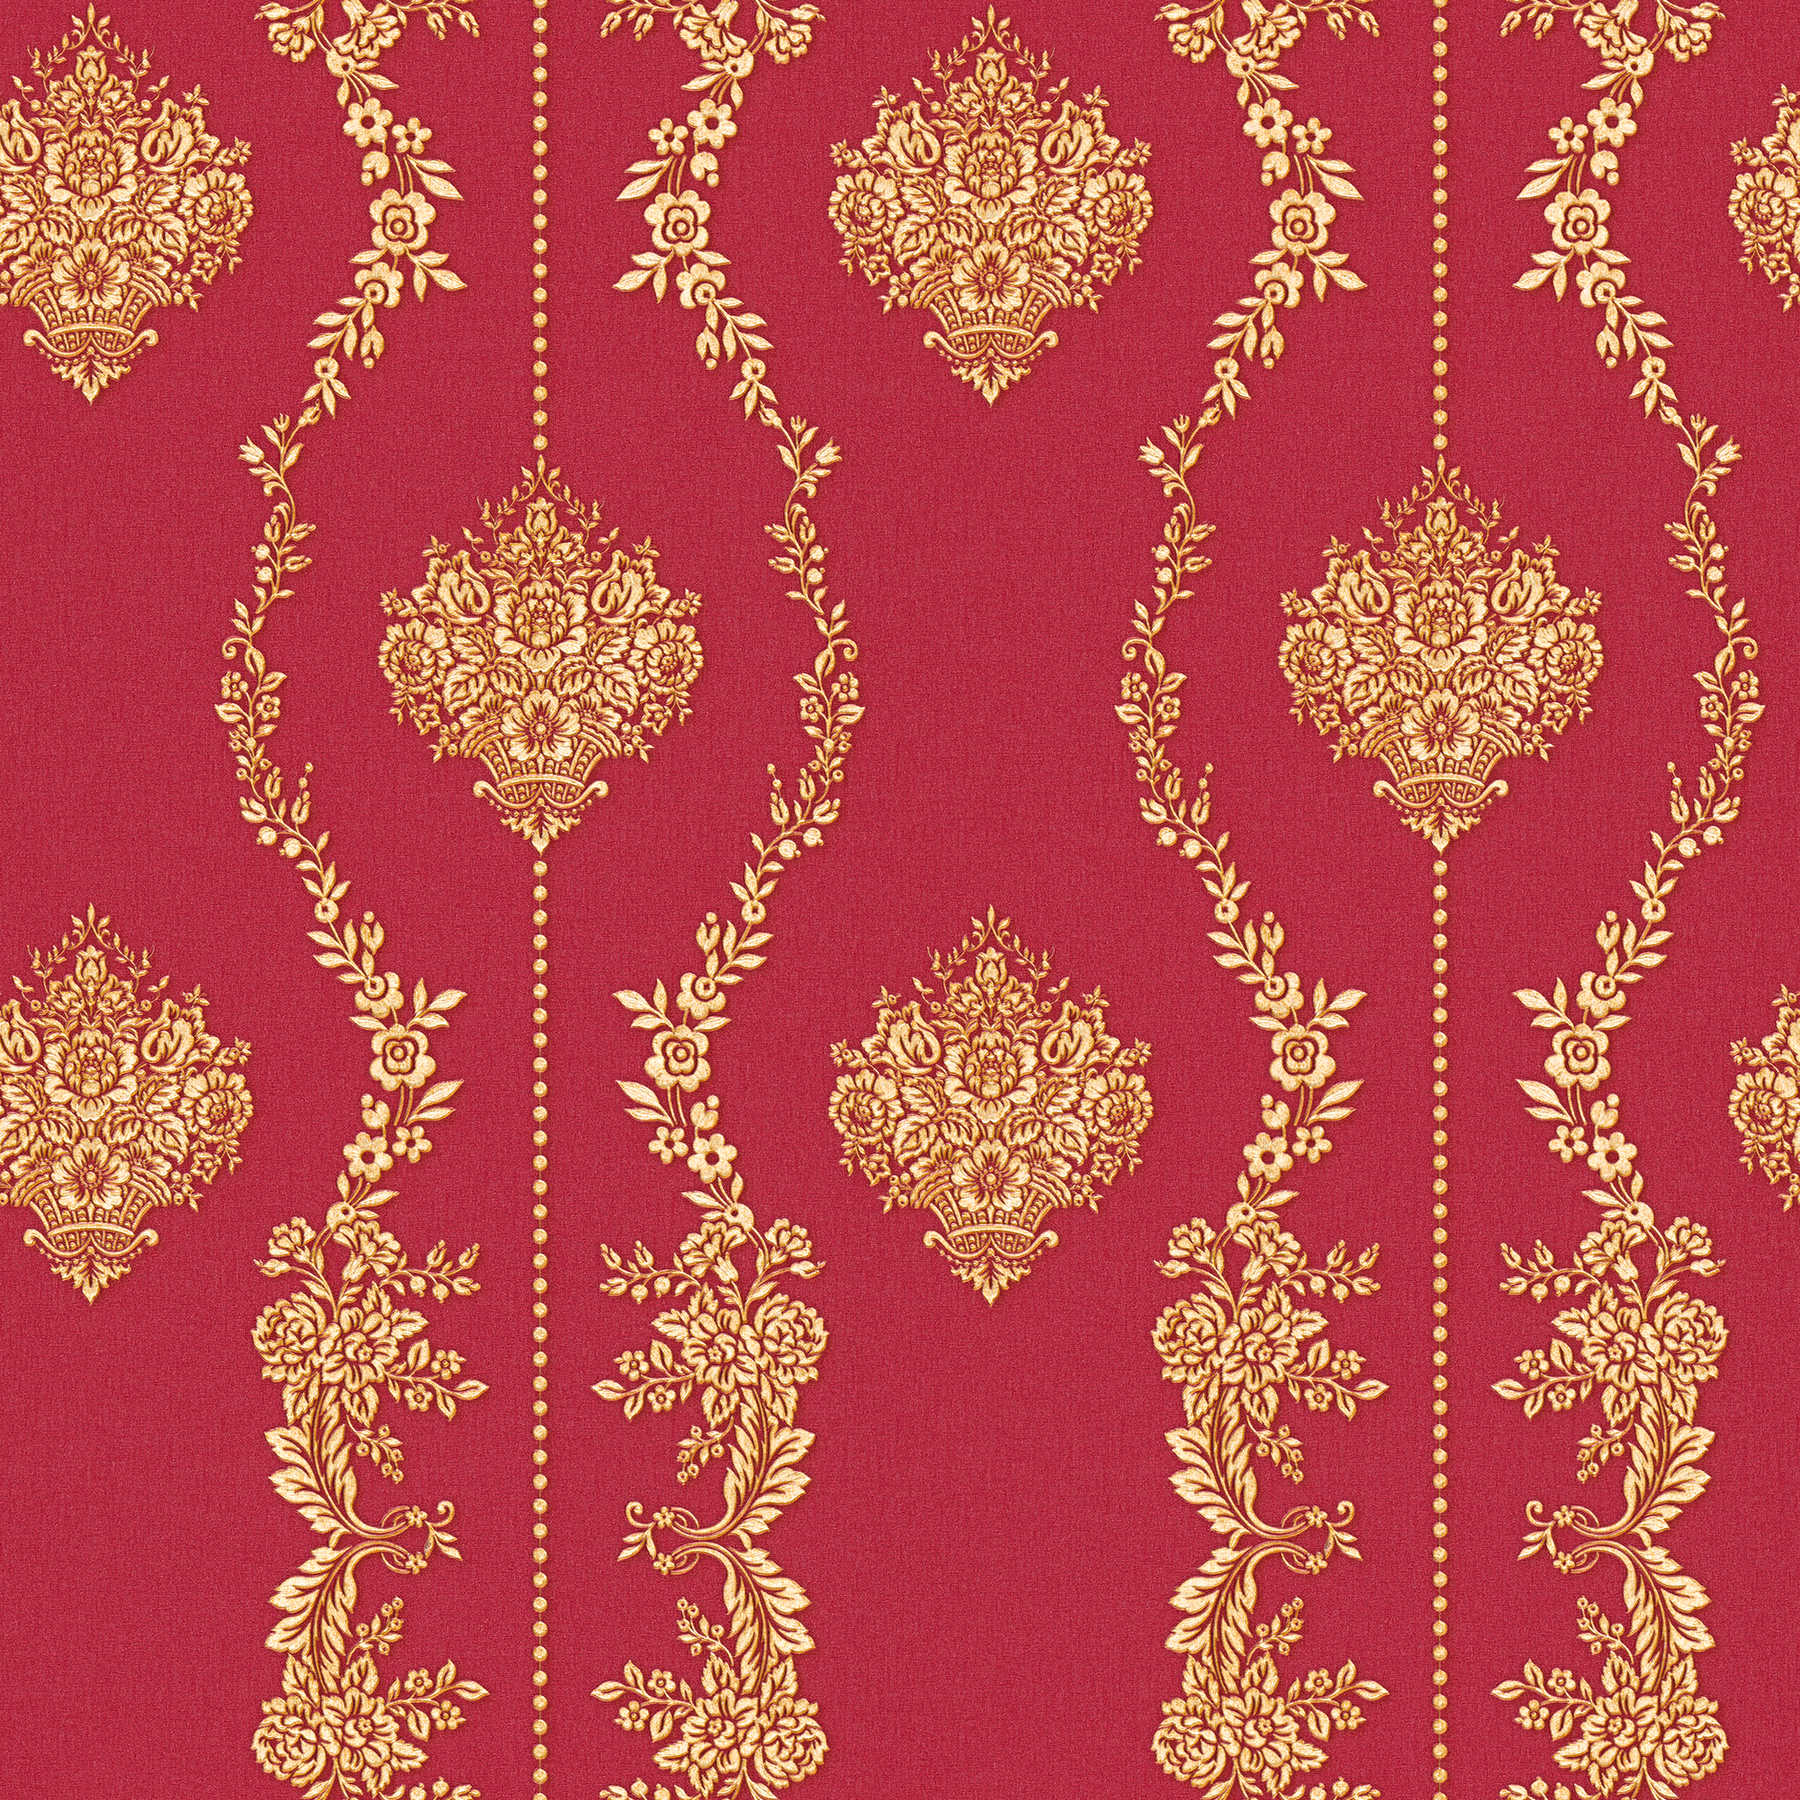 Carta da parati classica con effetto oro - metallizzata, rossa
